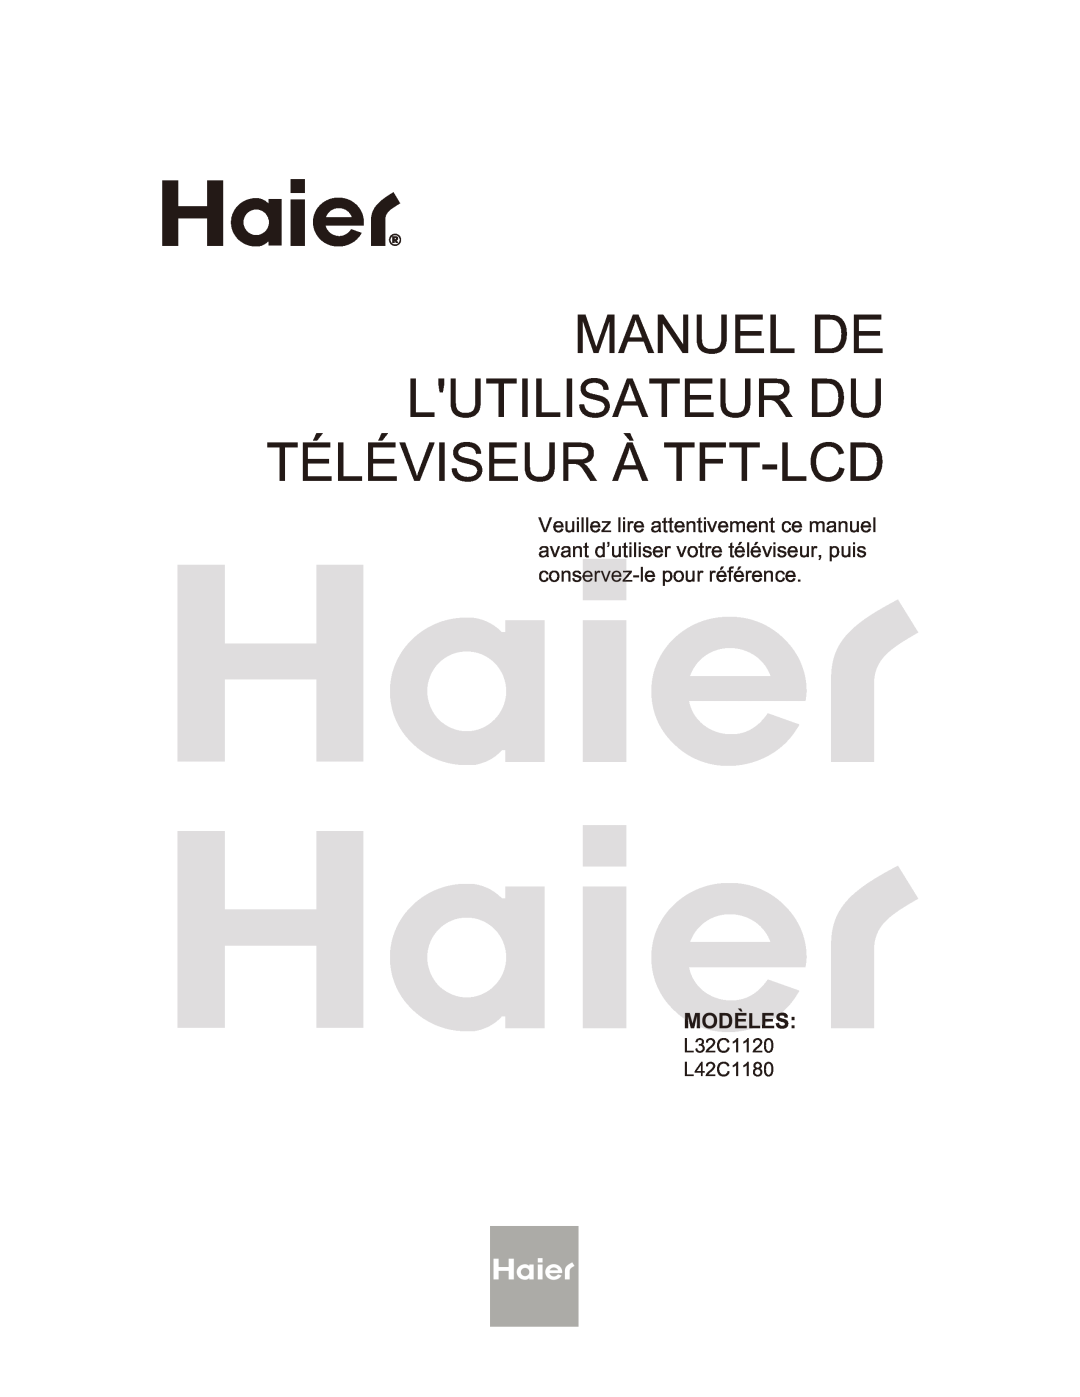 Haier L32C1180 owner manual Manuel De Lutilisateur Du Téléviseur À Tft-Lcd, Modèles, L32C1120 L42C1180 